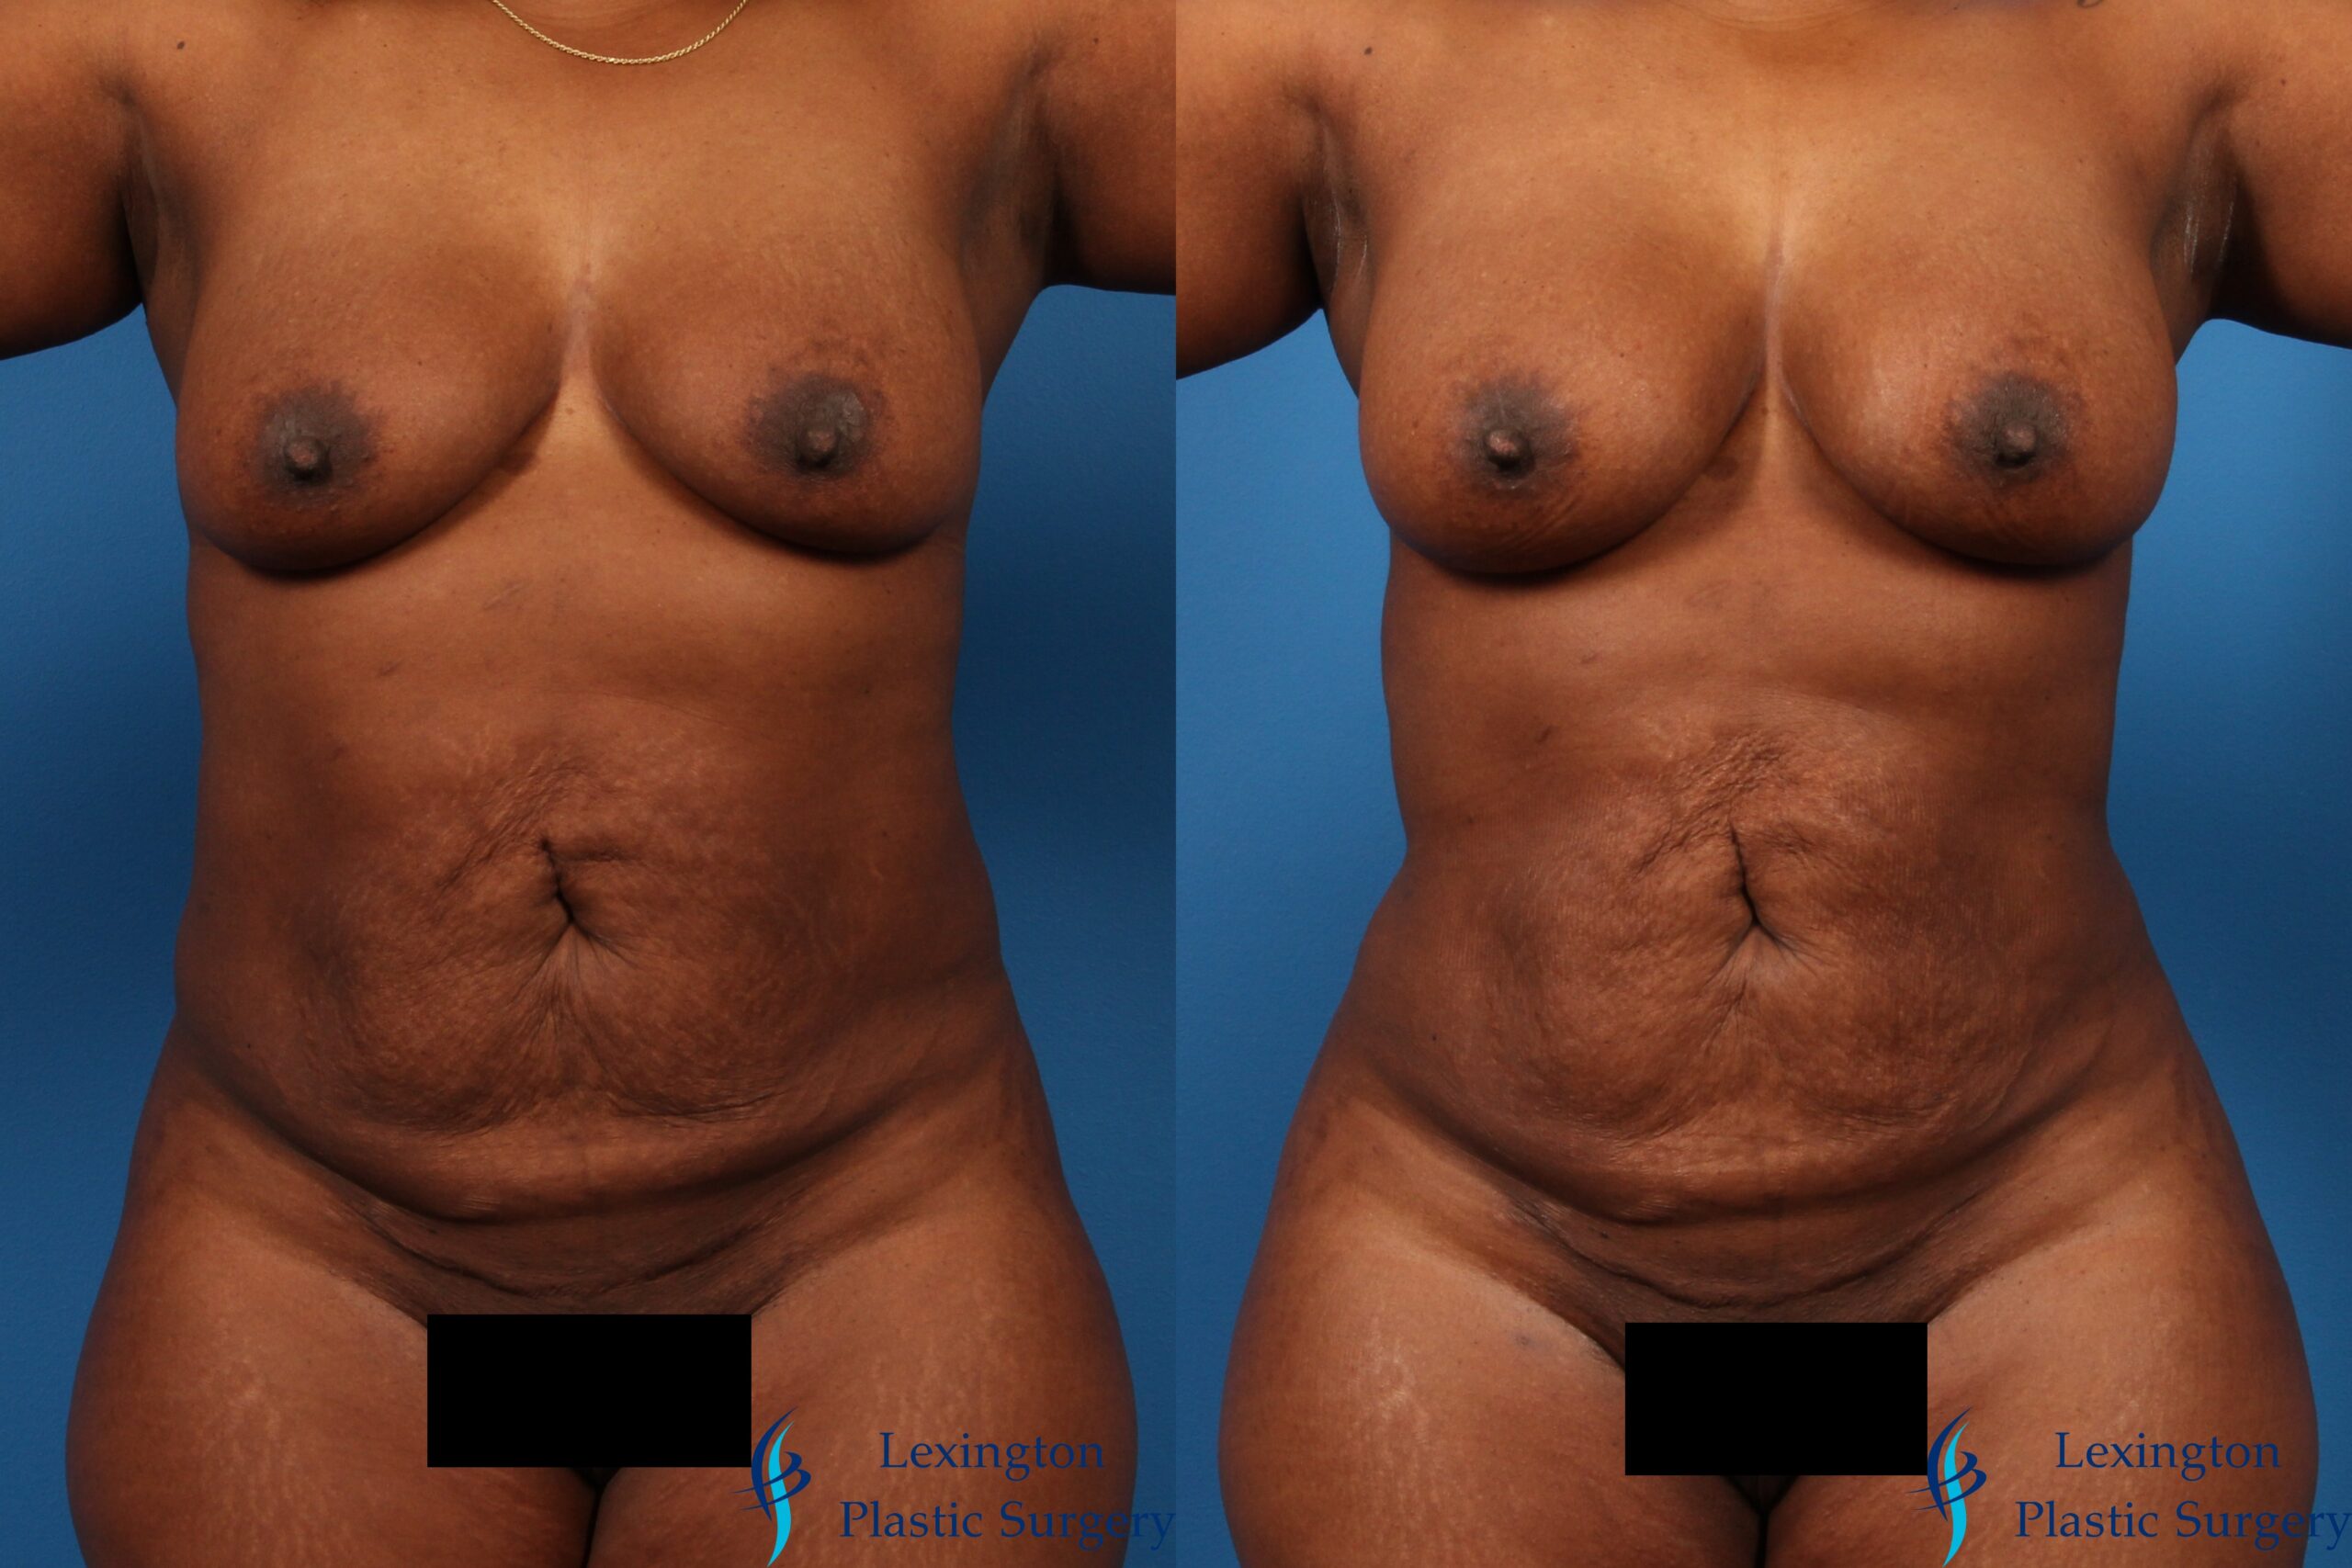 Liposuction: Patient 1